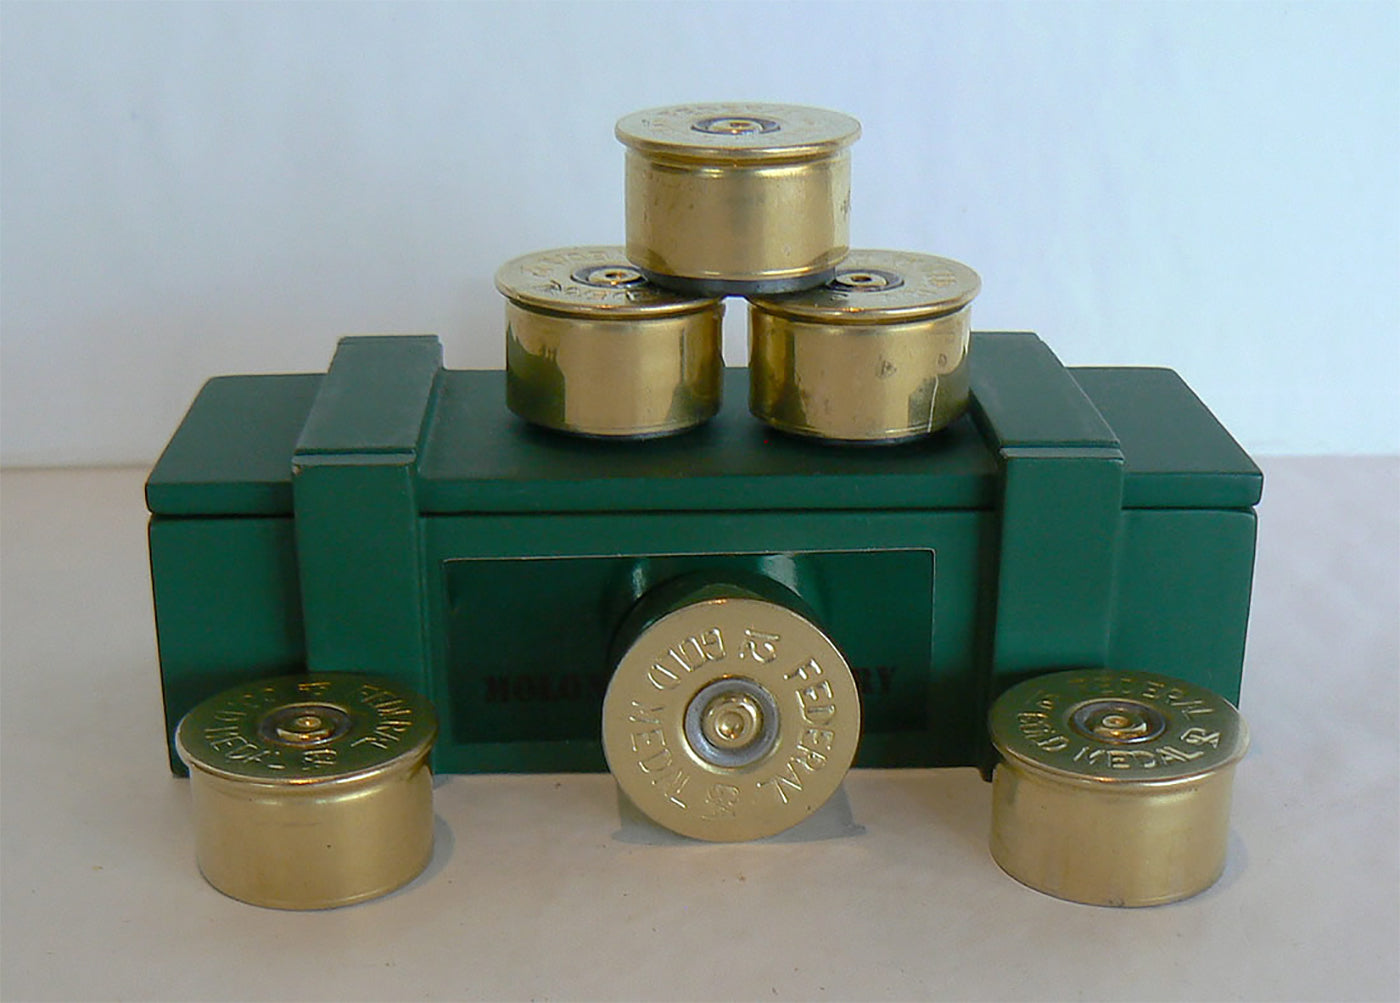 12 Gauge Shell Magnets - Set of 6 Fridge Magnets